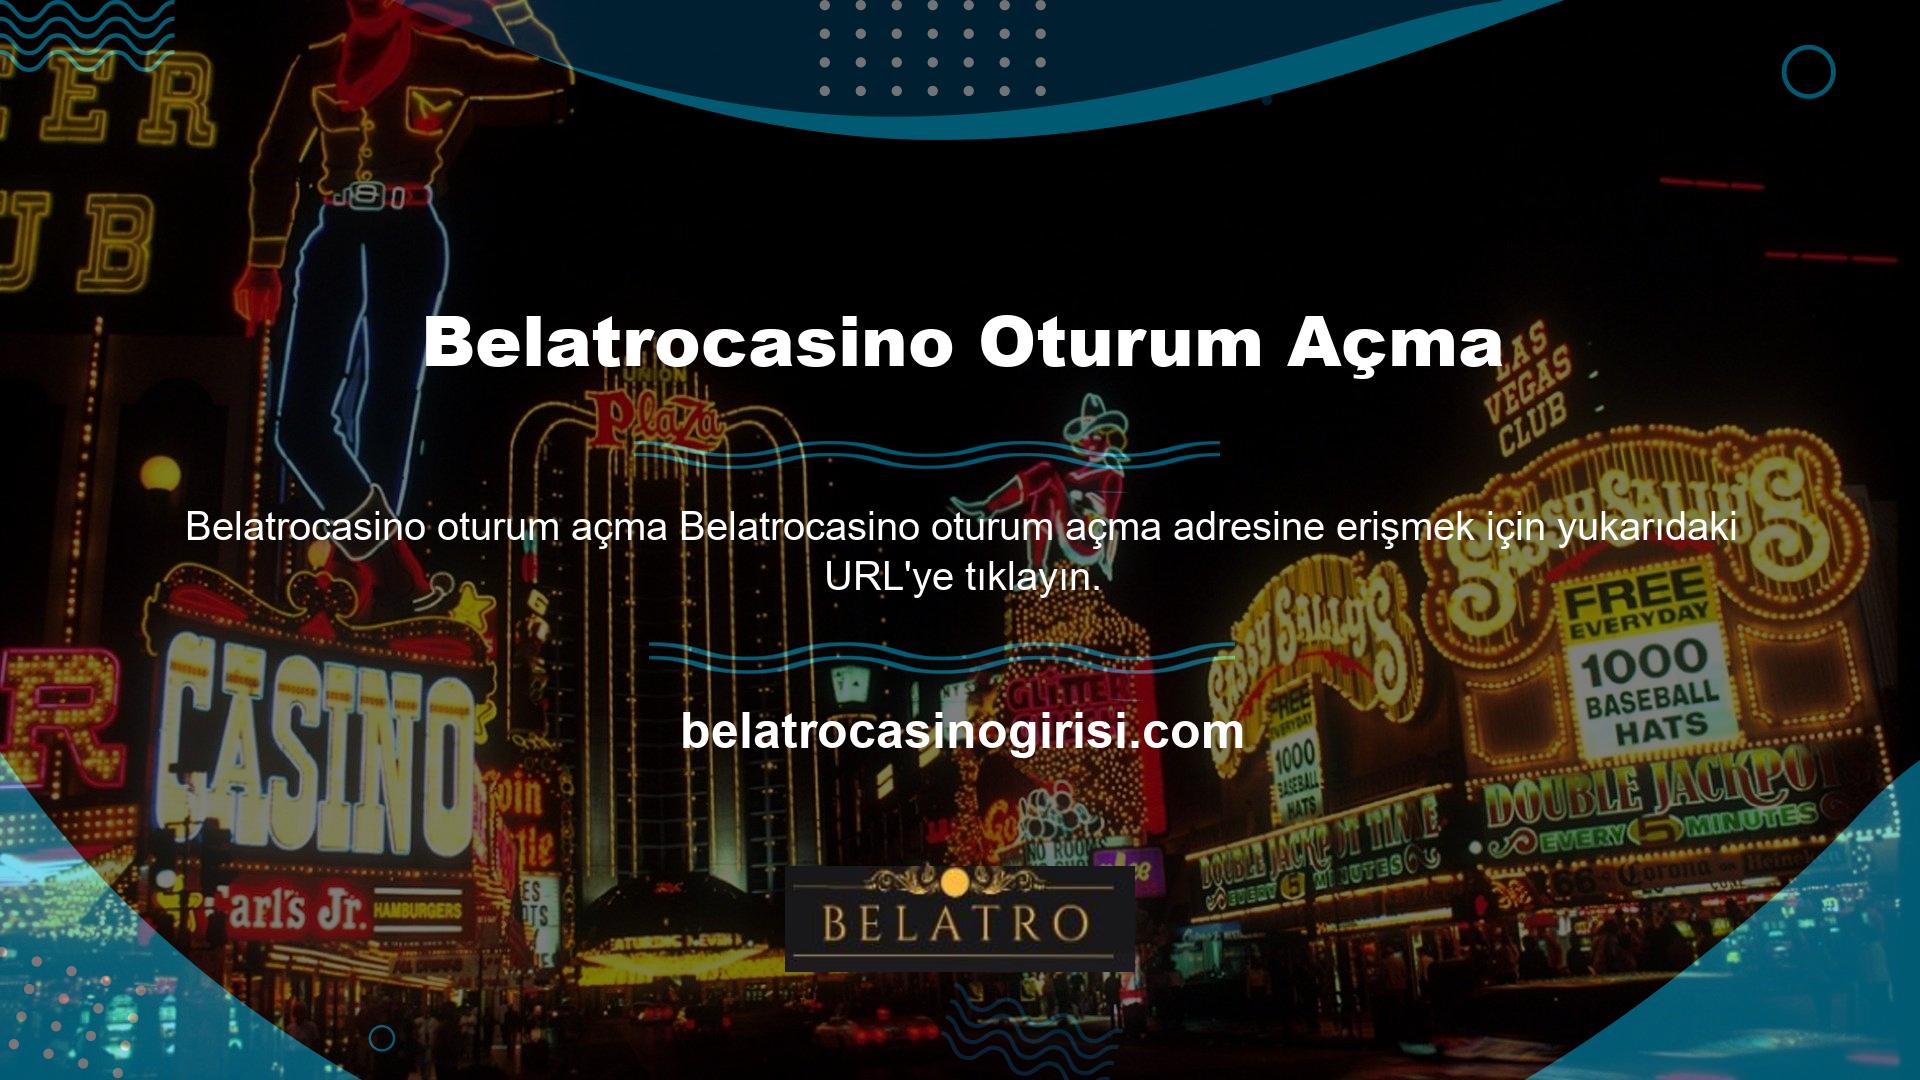 Belatrocasino bahis siteleri düzenli olarak adres değiştirmektedir